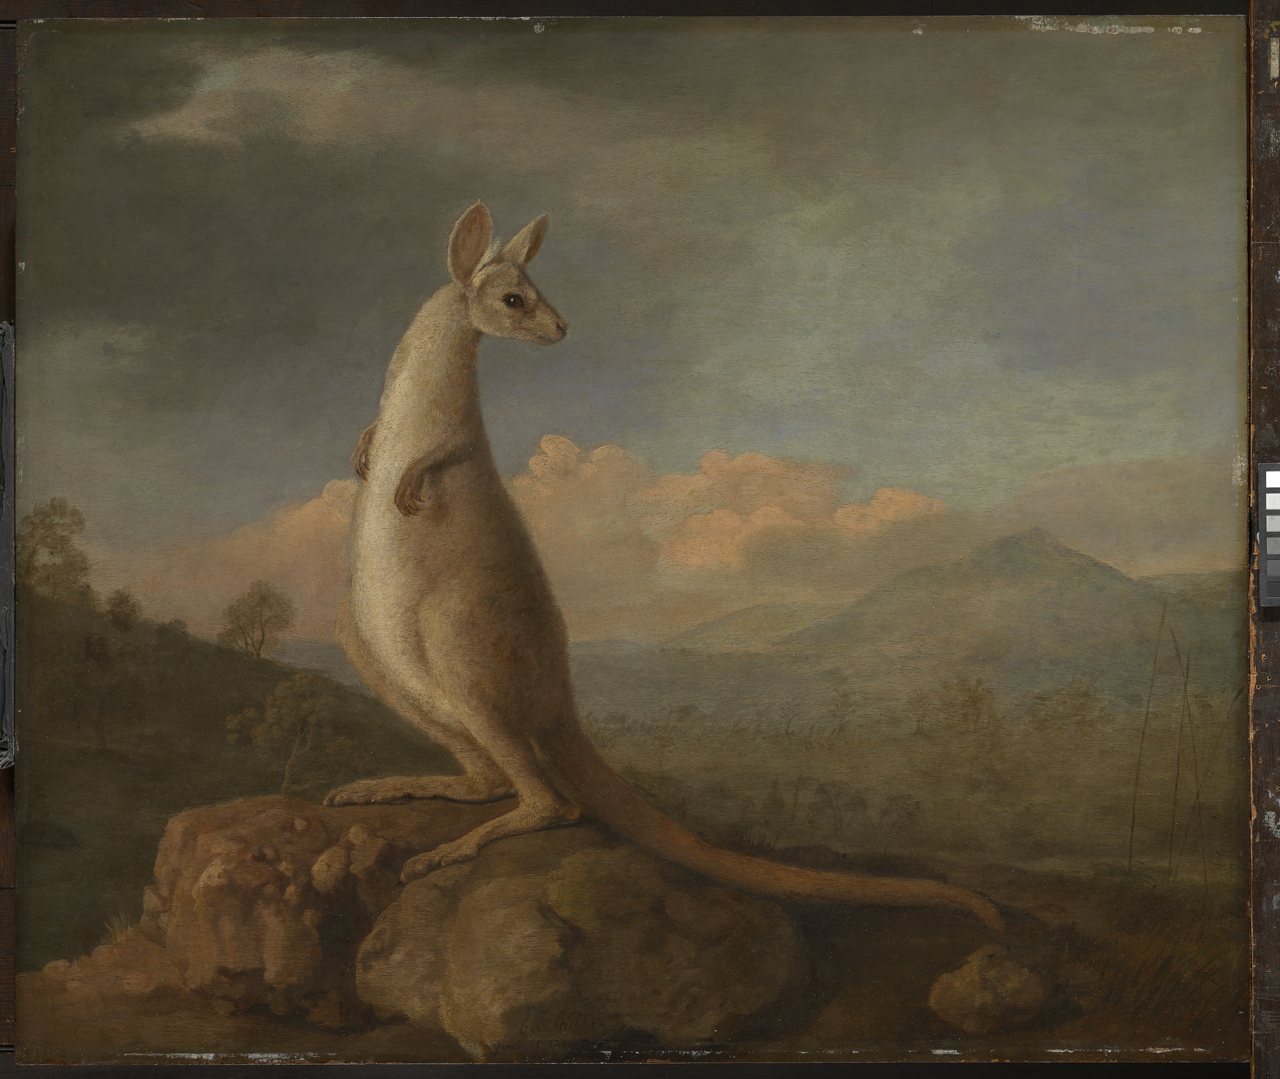 El canguro de Nueva Holanda by George Stubbs - 1772 - 605 x 715 mm Museos Reales de Greenwich